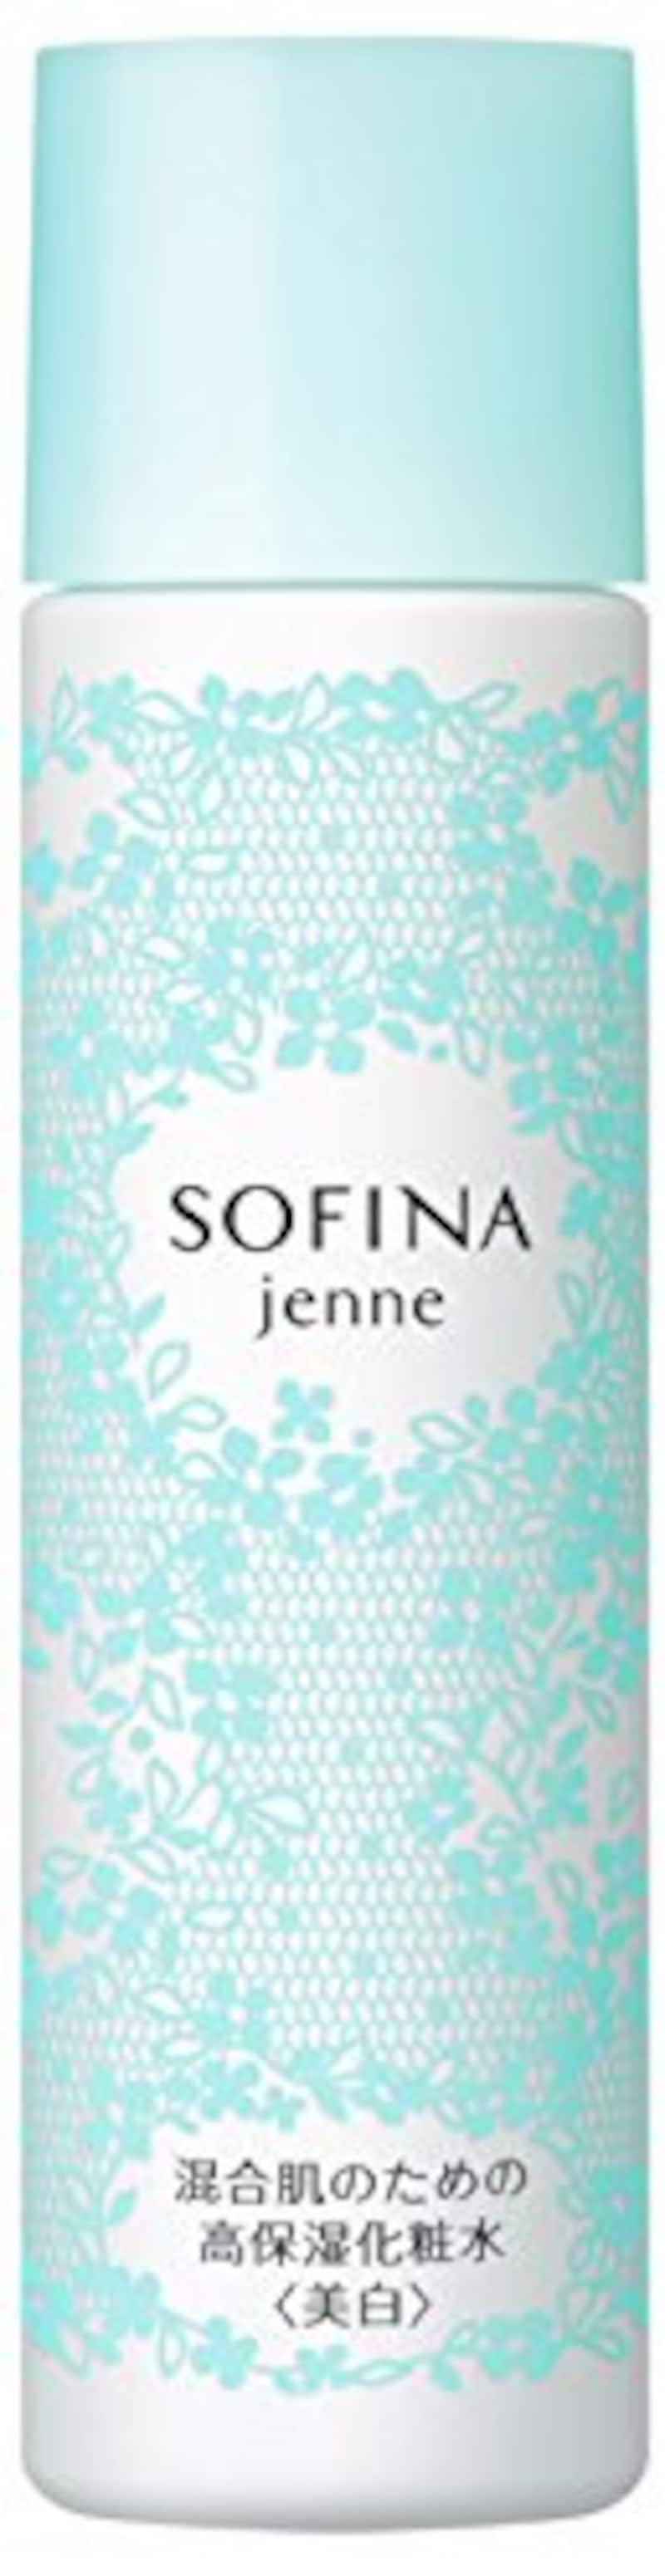 SOFINA jenne（ソフィーナジェンヌ）,混合肌のための高保湿化粧水